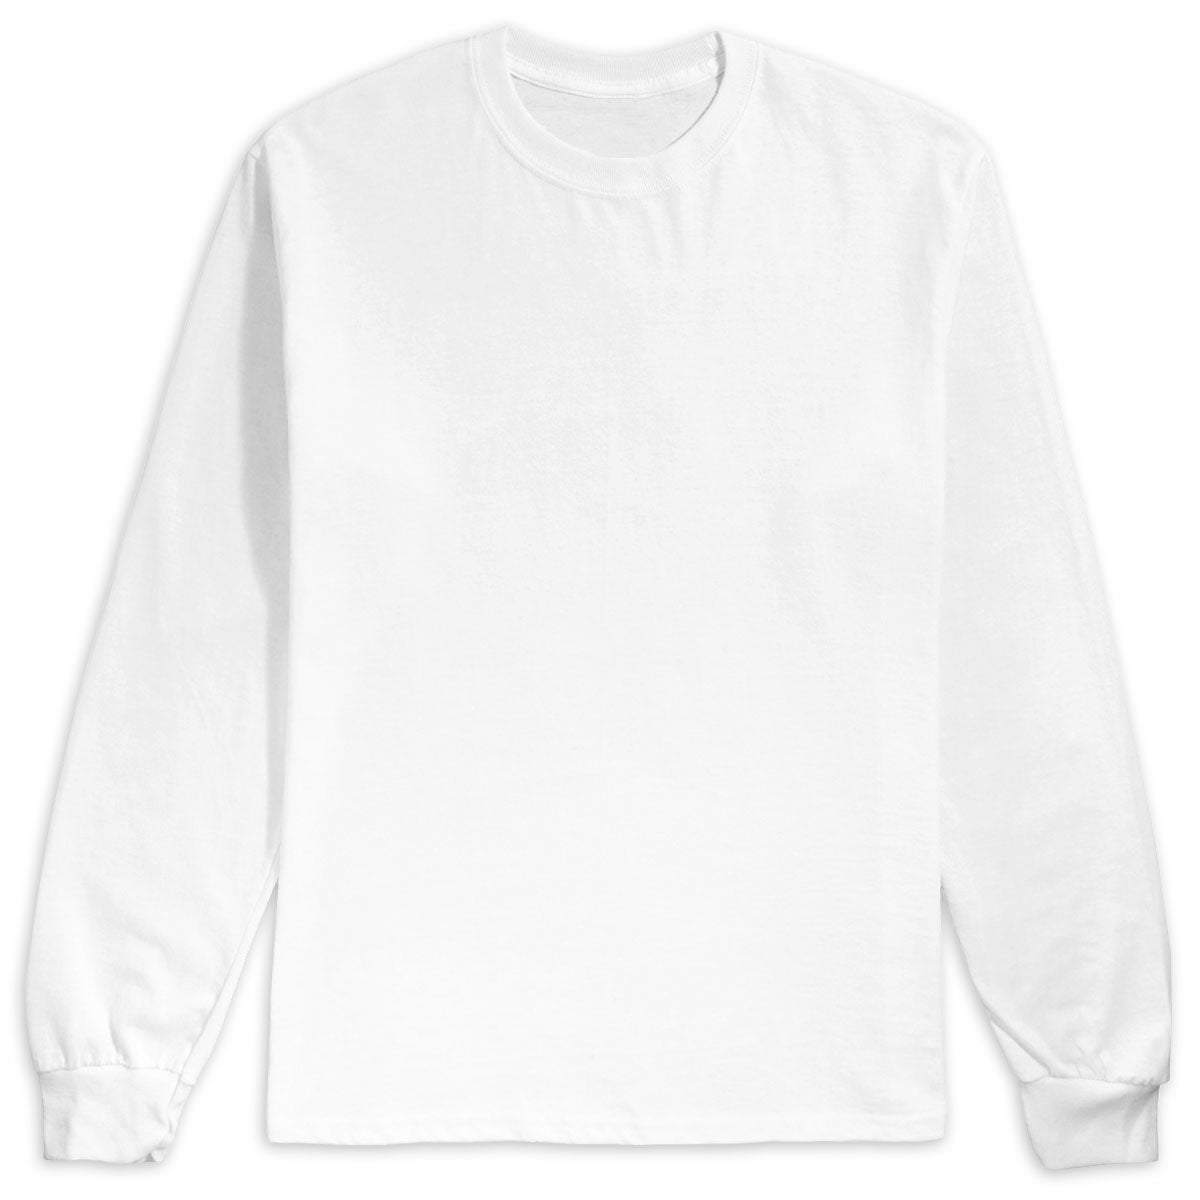 CCS Custom Long Sleeve T-Shirt image 2